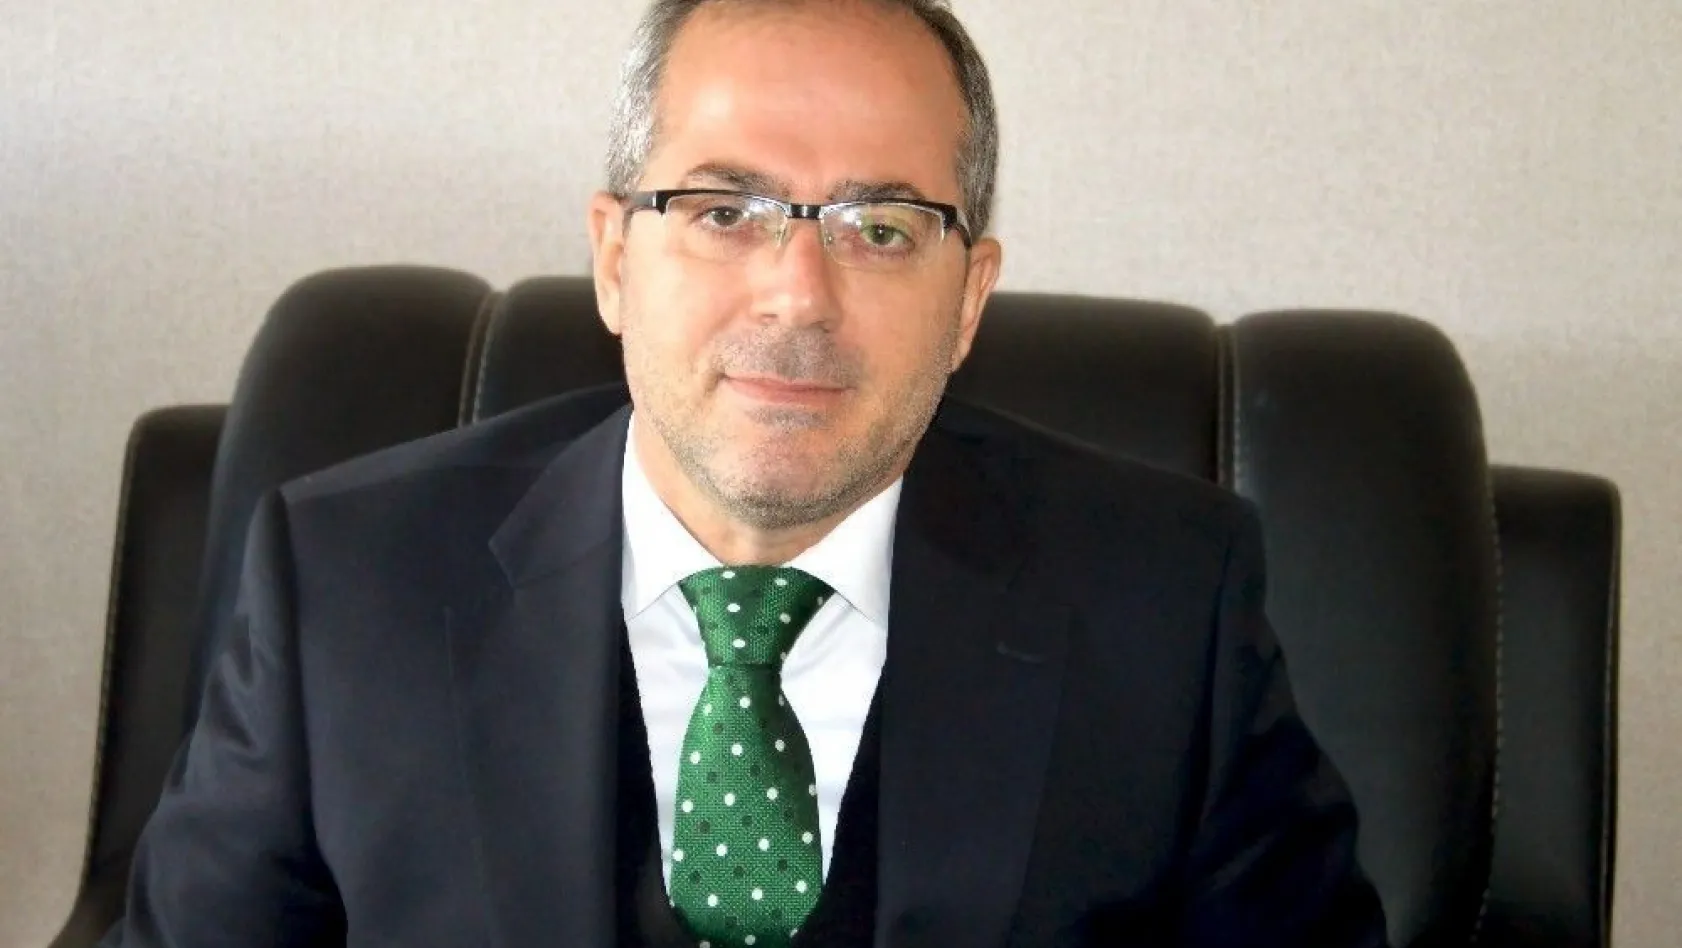 Hukukçu ve siyasetçi Aydın Altaç, ekonomiye ilişkin değerlendirmelerde bulundu
